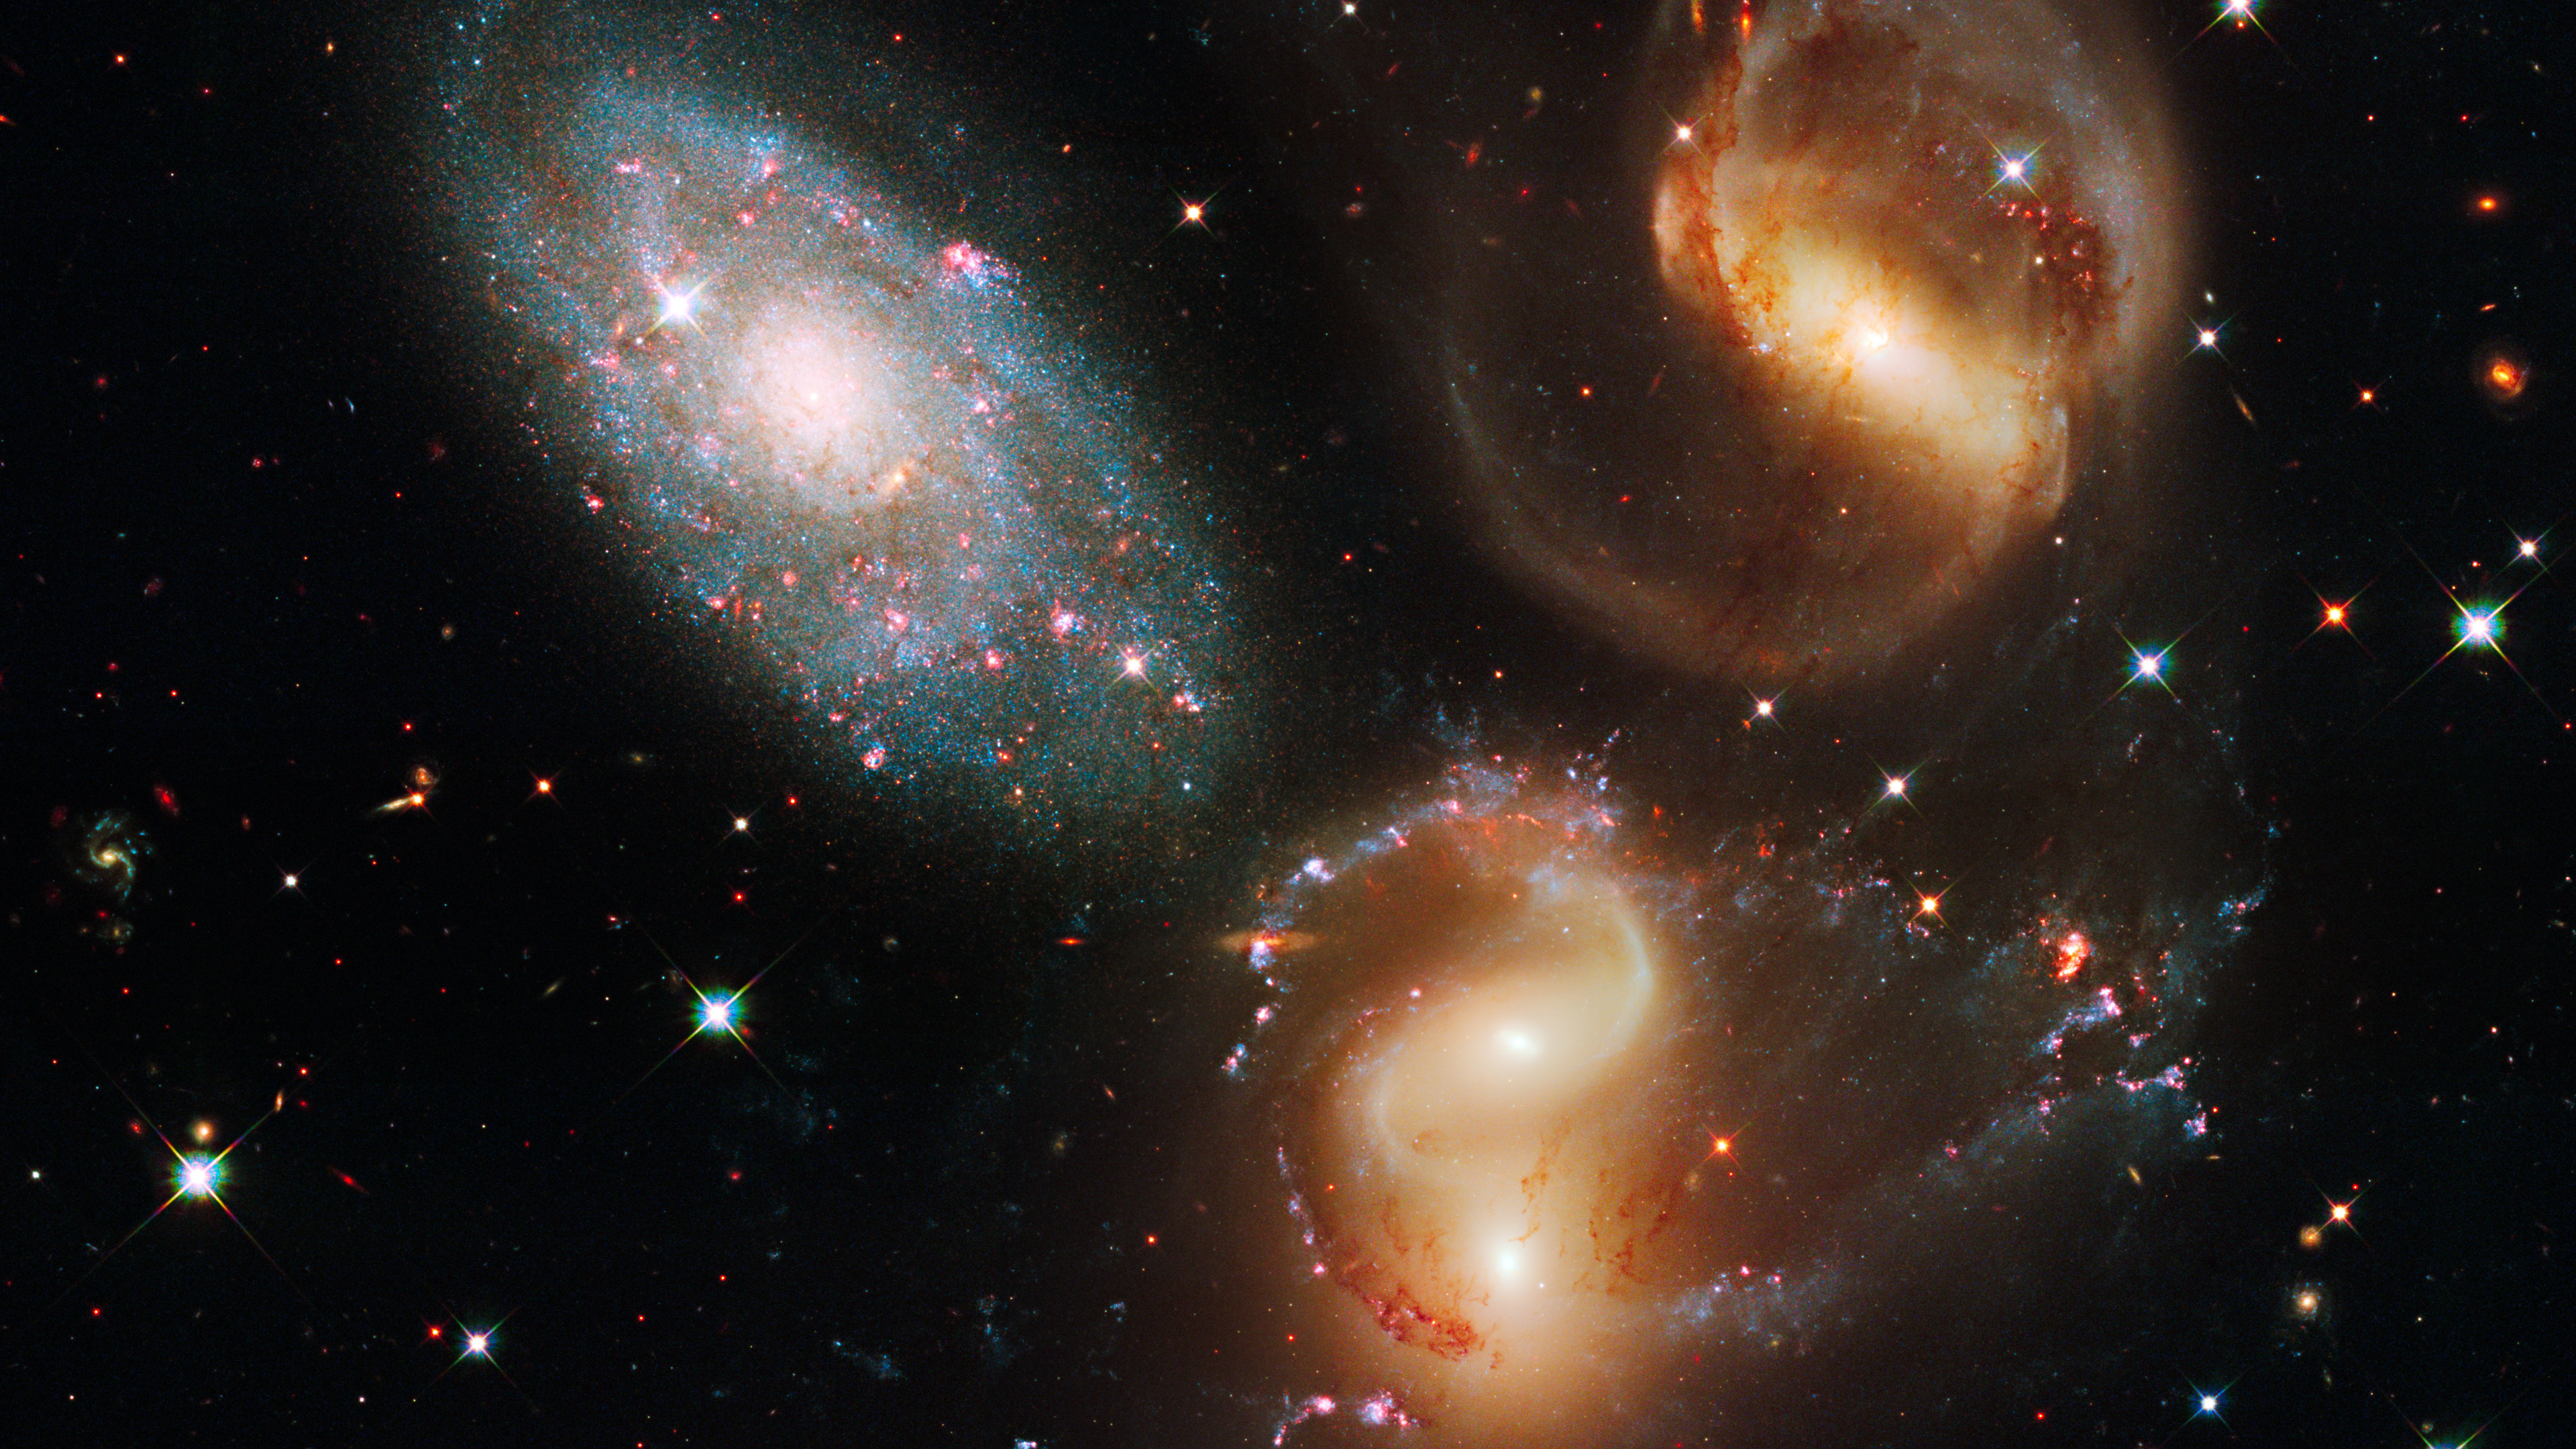 哈勃太空望远镜, 天文学, 外层空间, 天文学对象, 宇宙 壁纸 3840x2160 允许